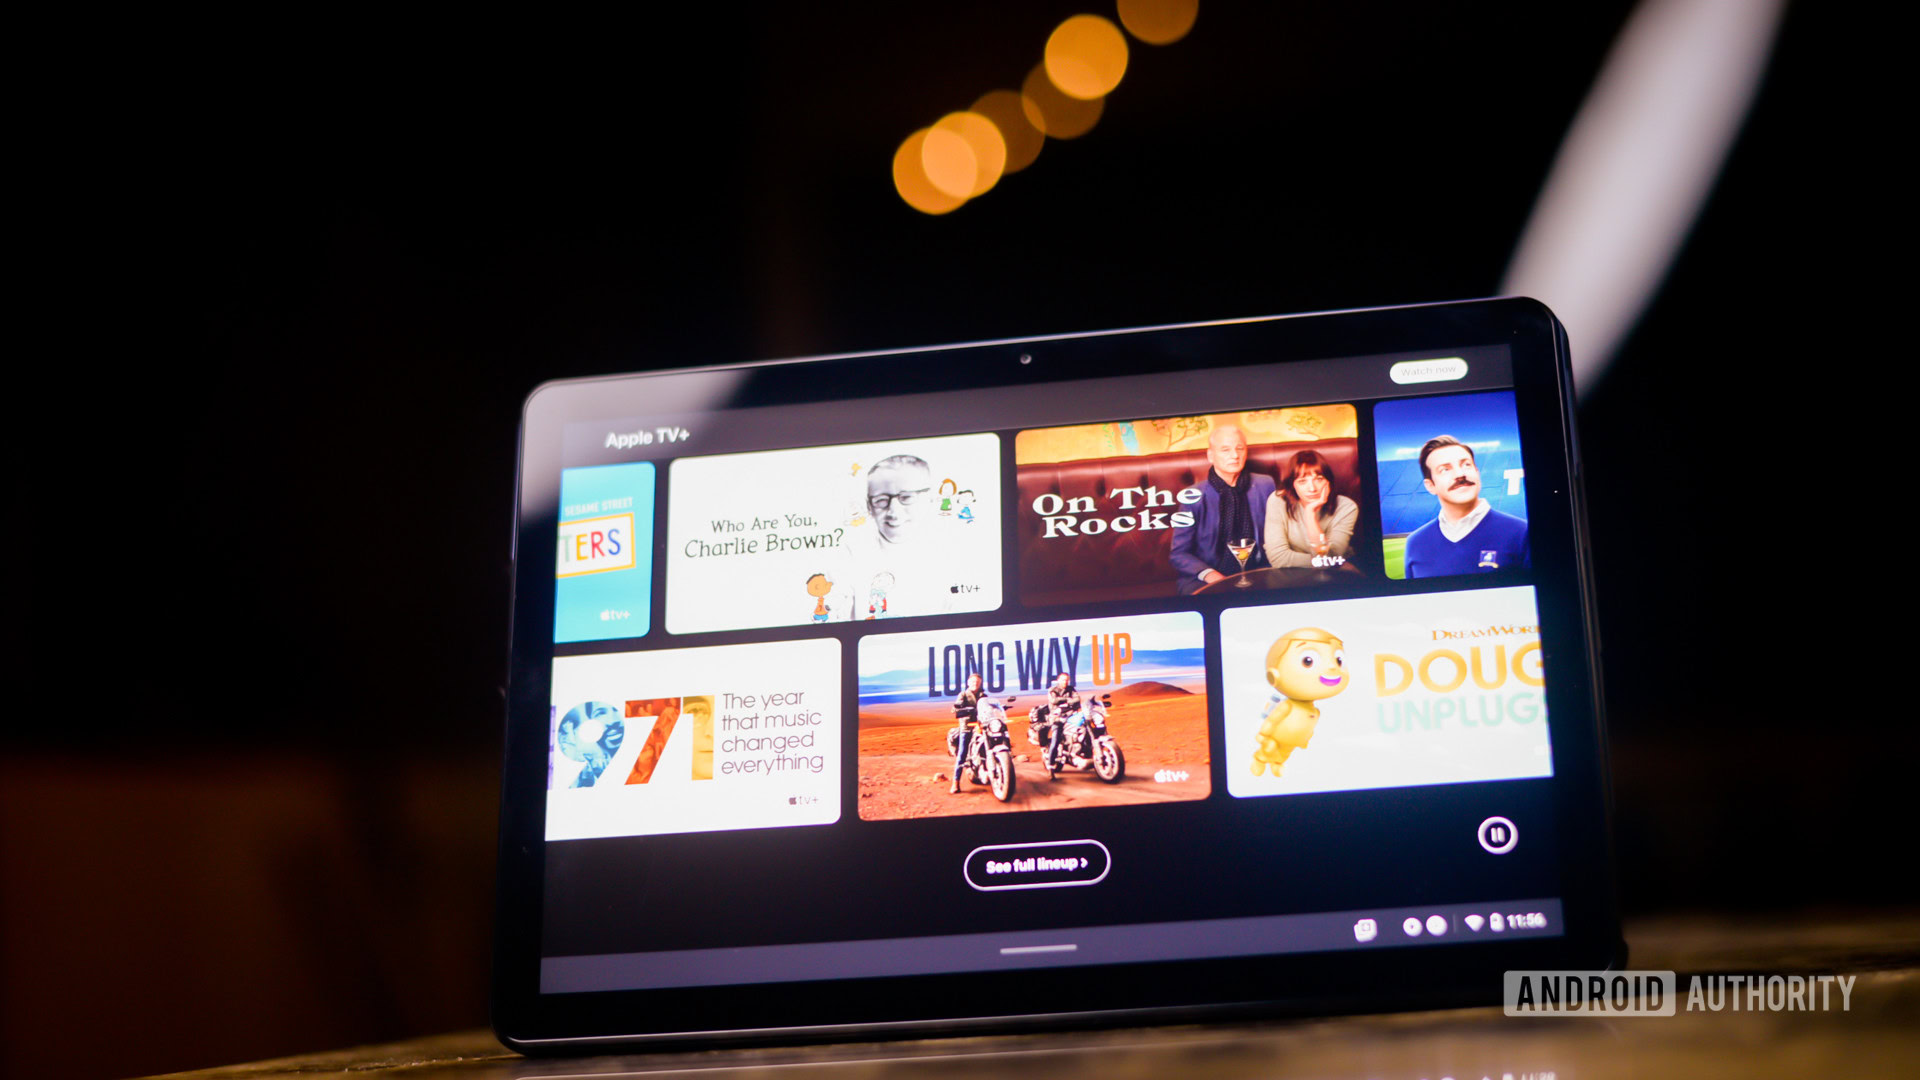 Apple TV Plus on a tablet display